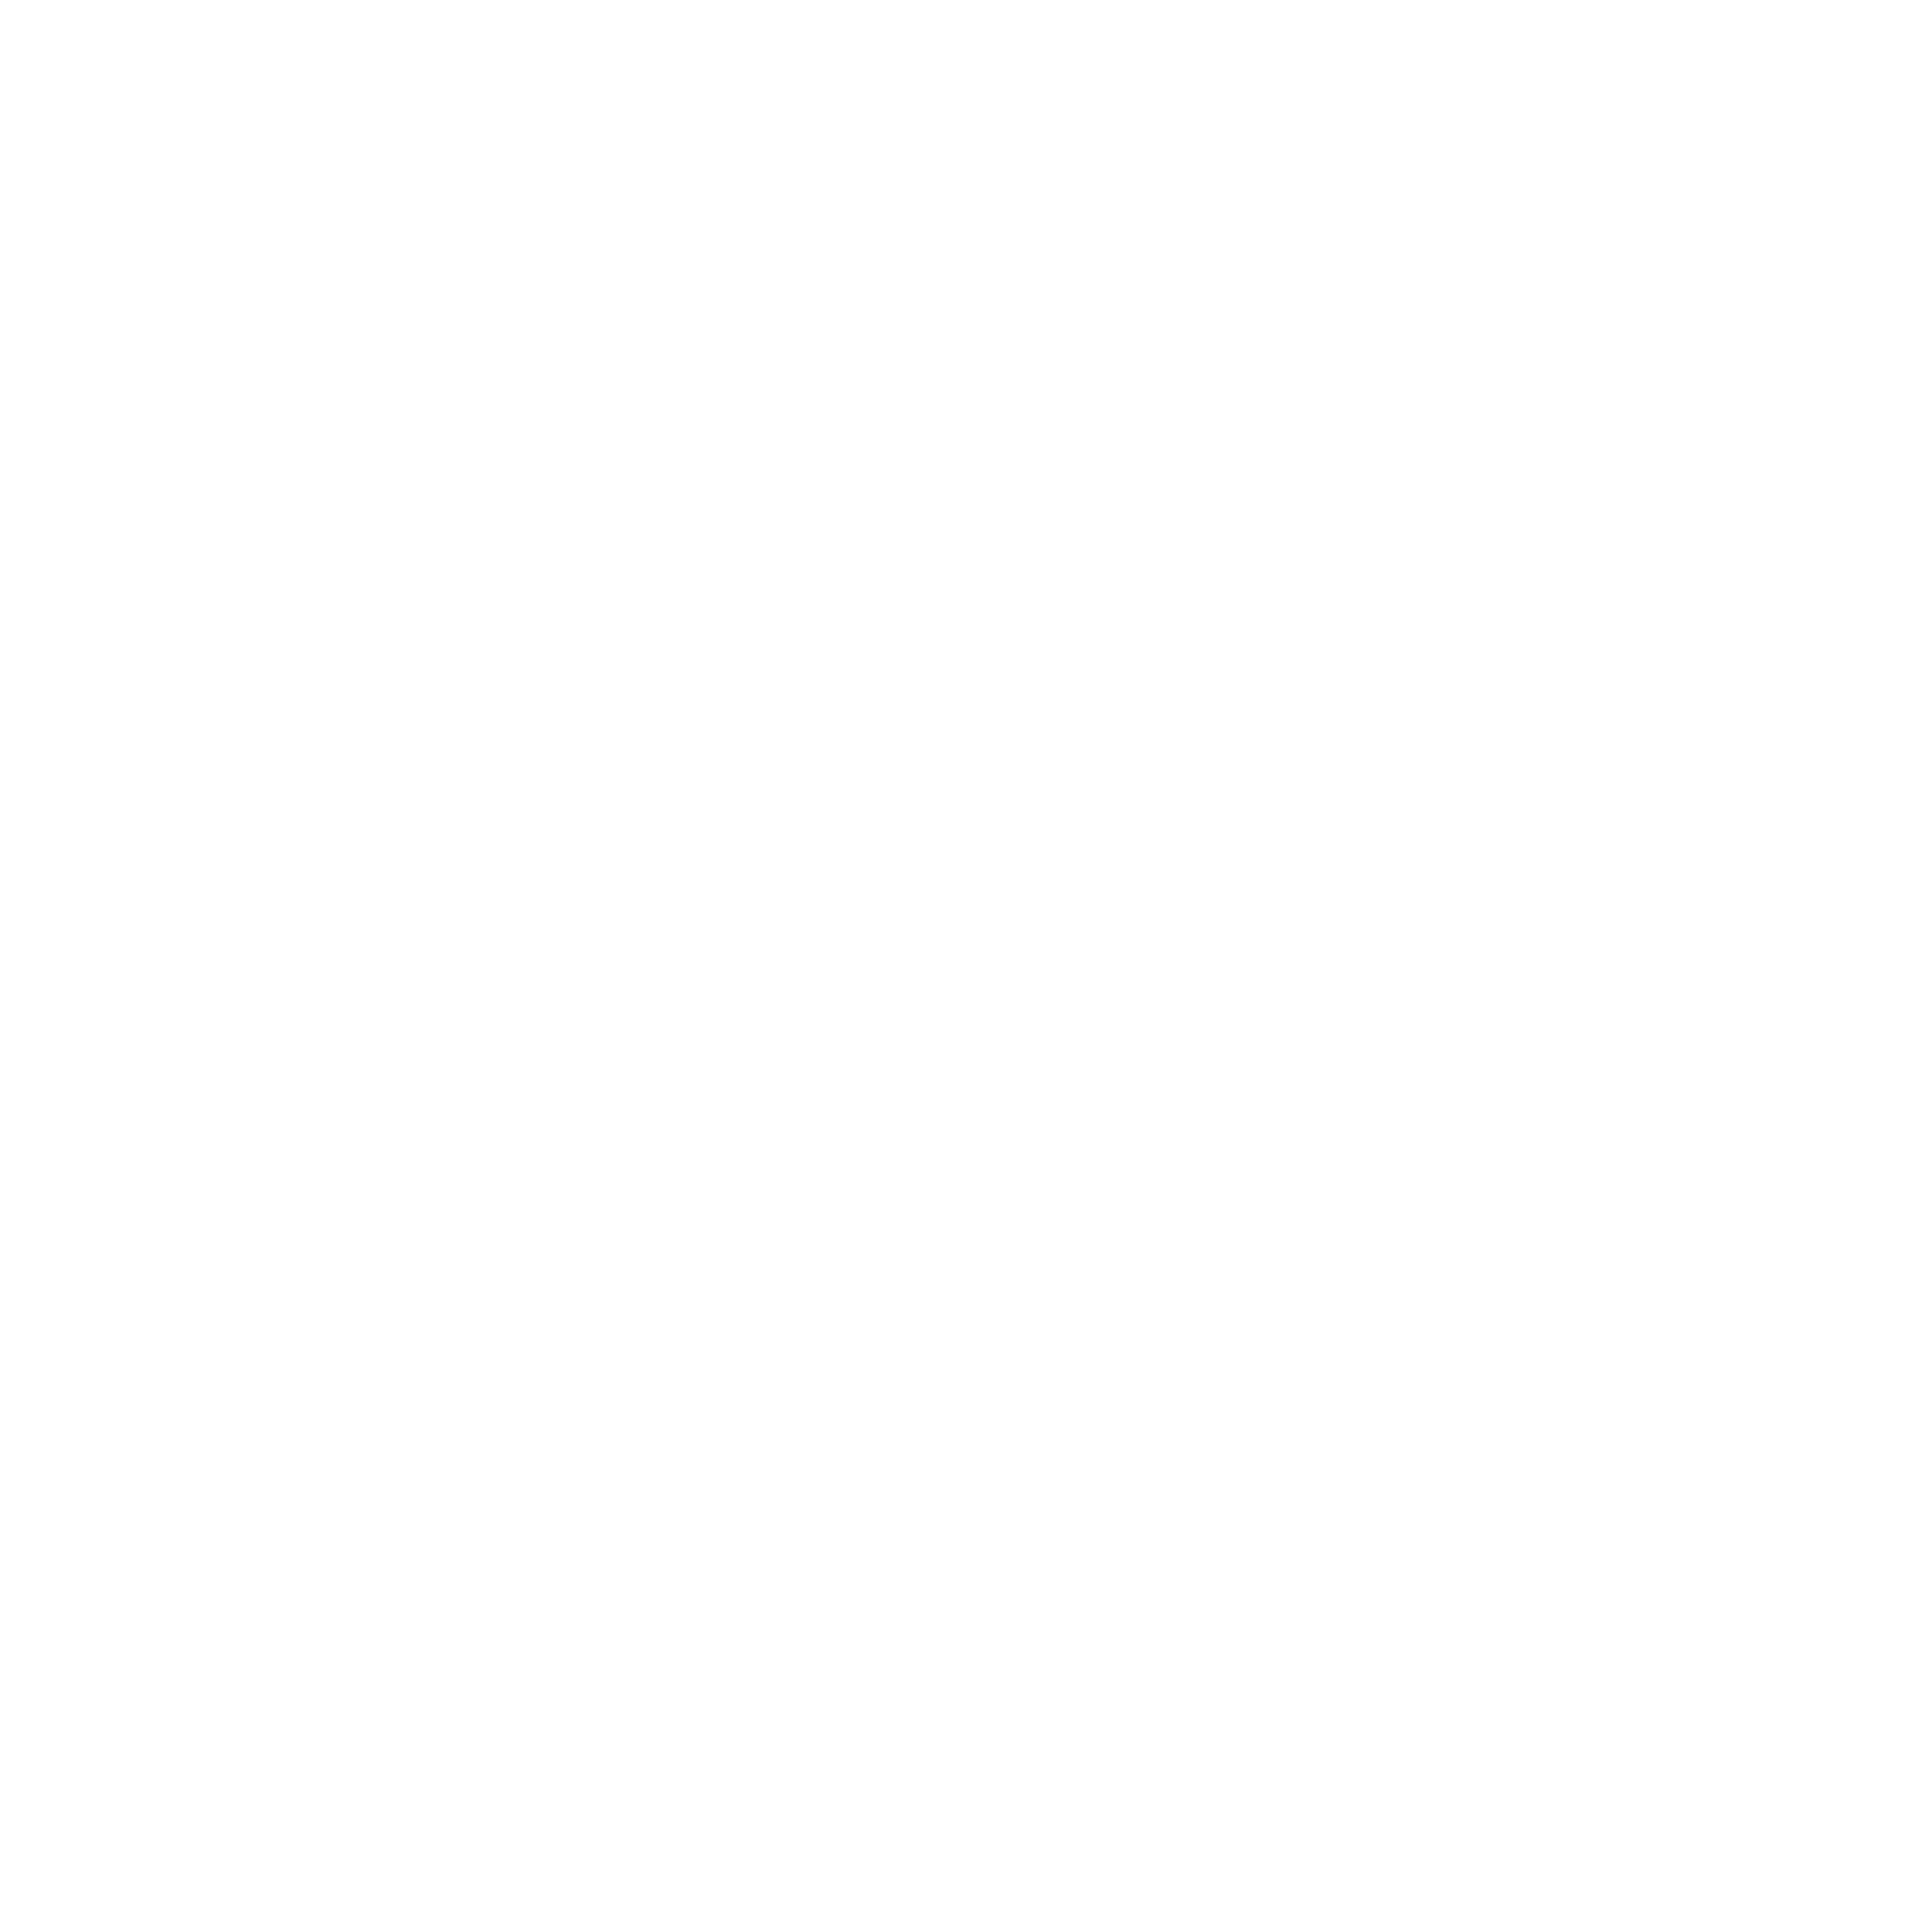 Deerfield Fund for Black Wealth